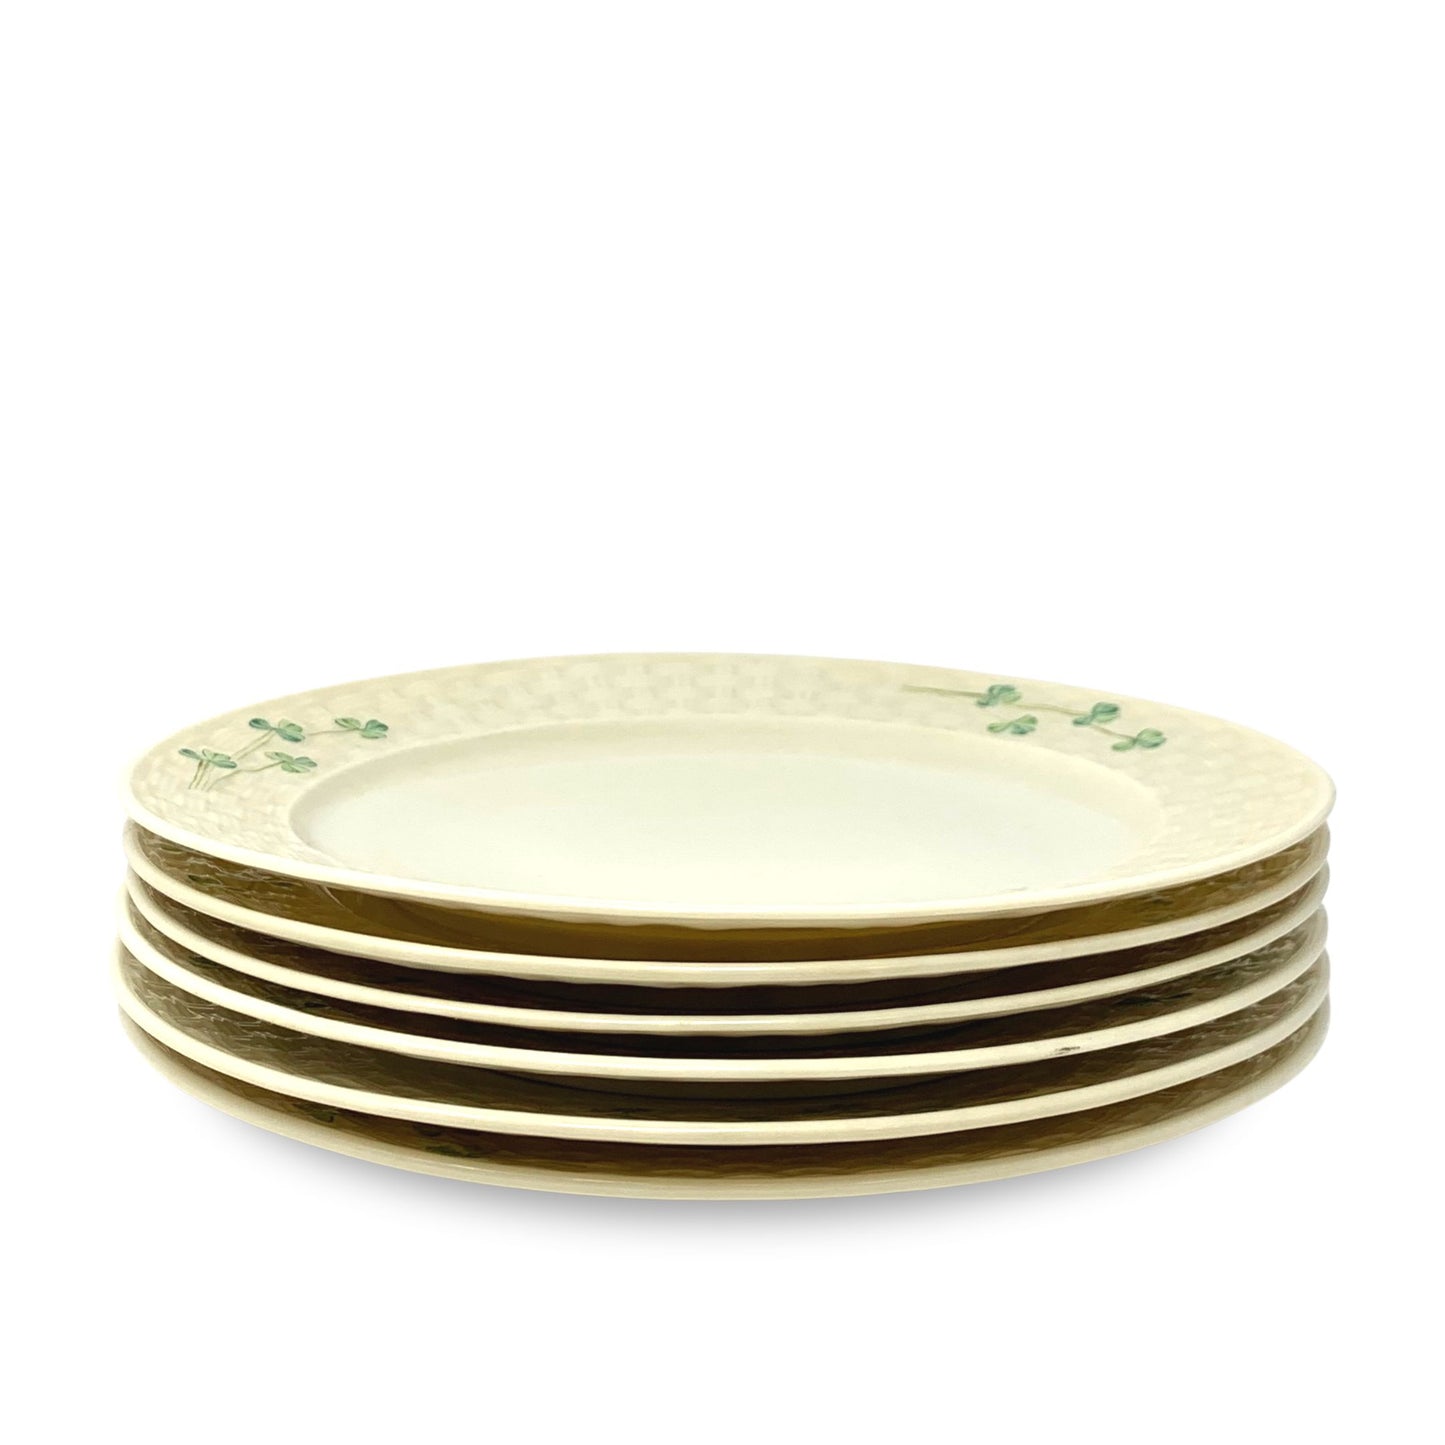 Belleek "Shamrock" Dinner Plates (Set of 6)(6th mark)